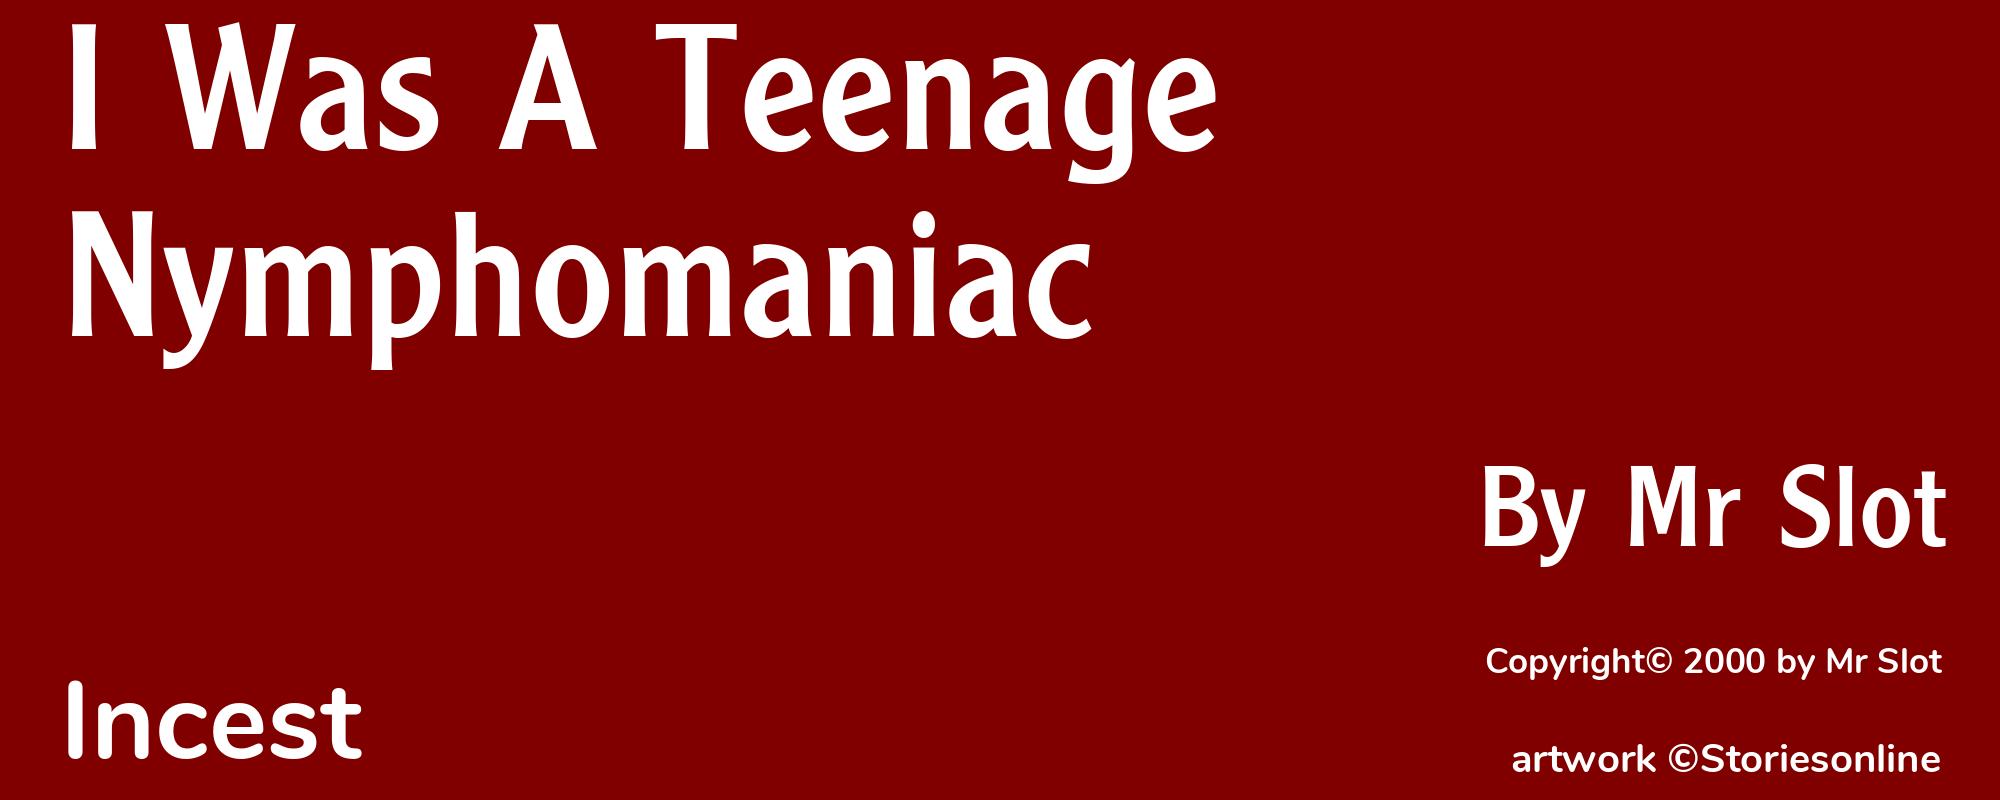 I Was A Teenage Nymphomaniac - Cover